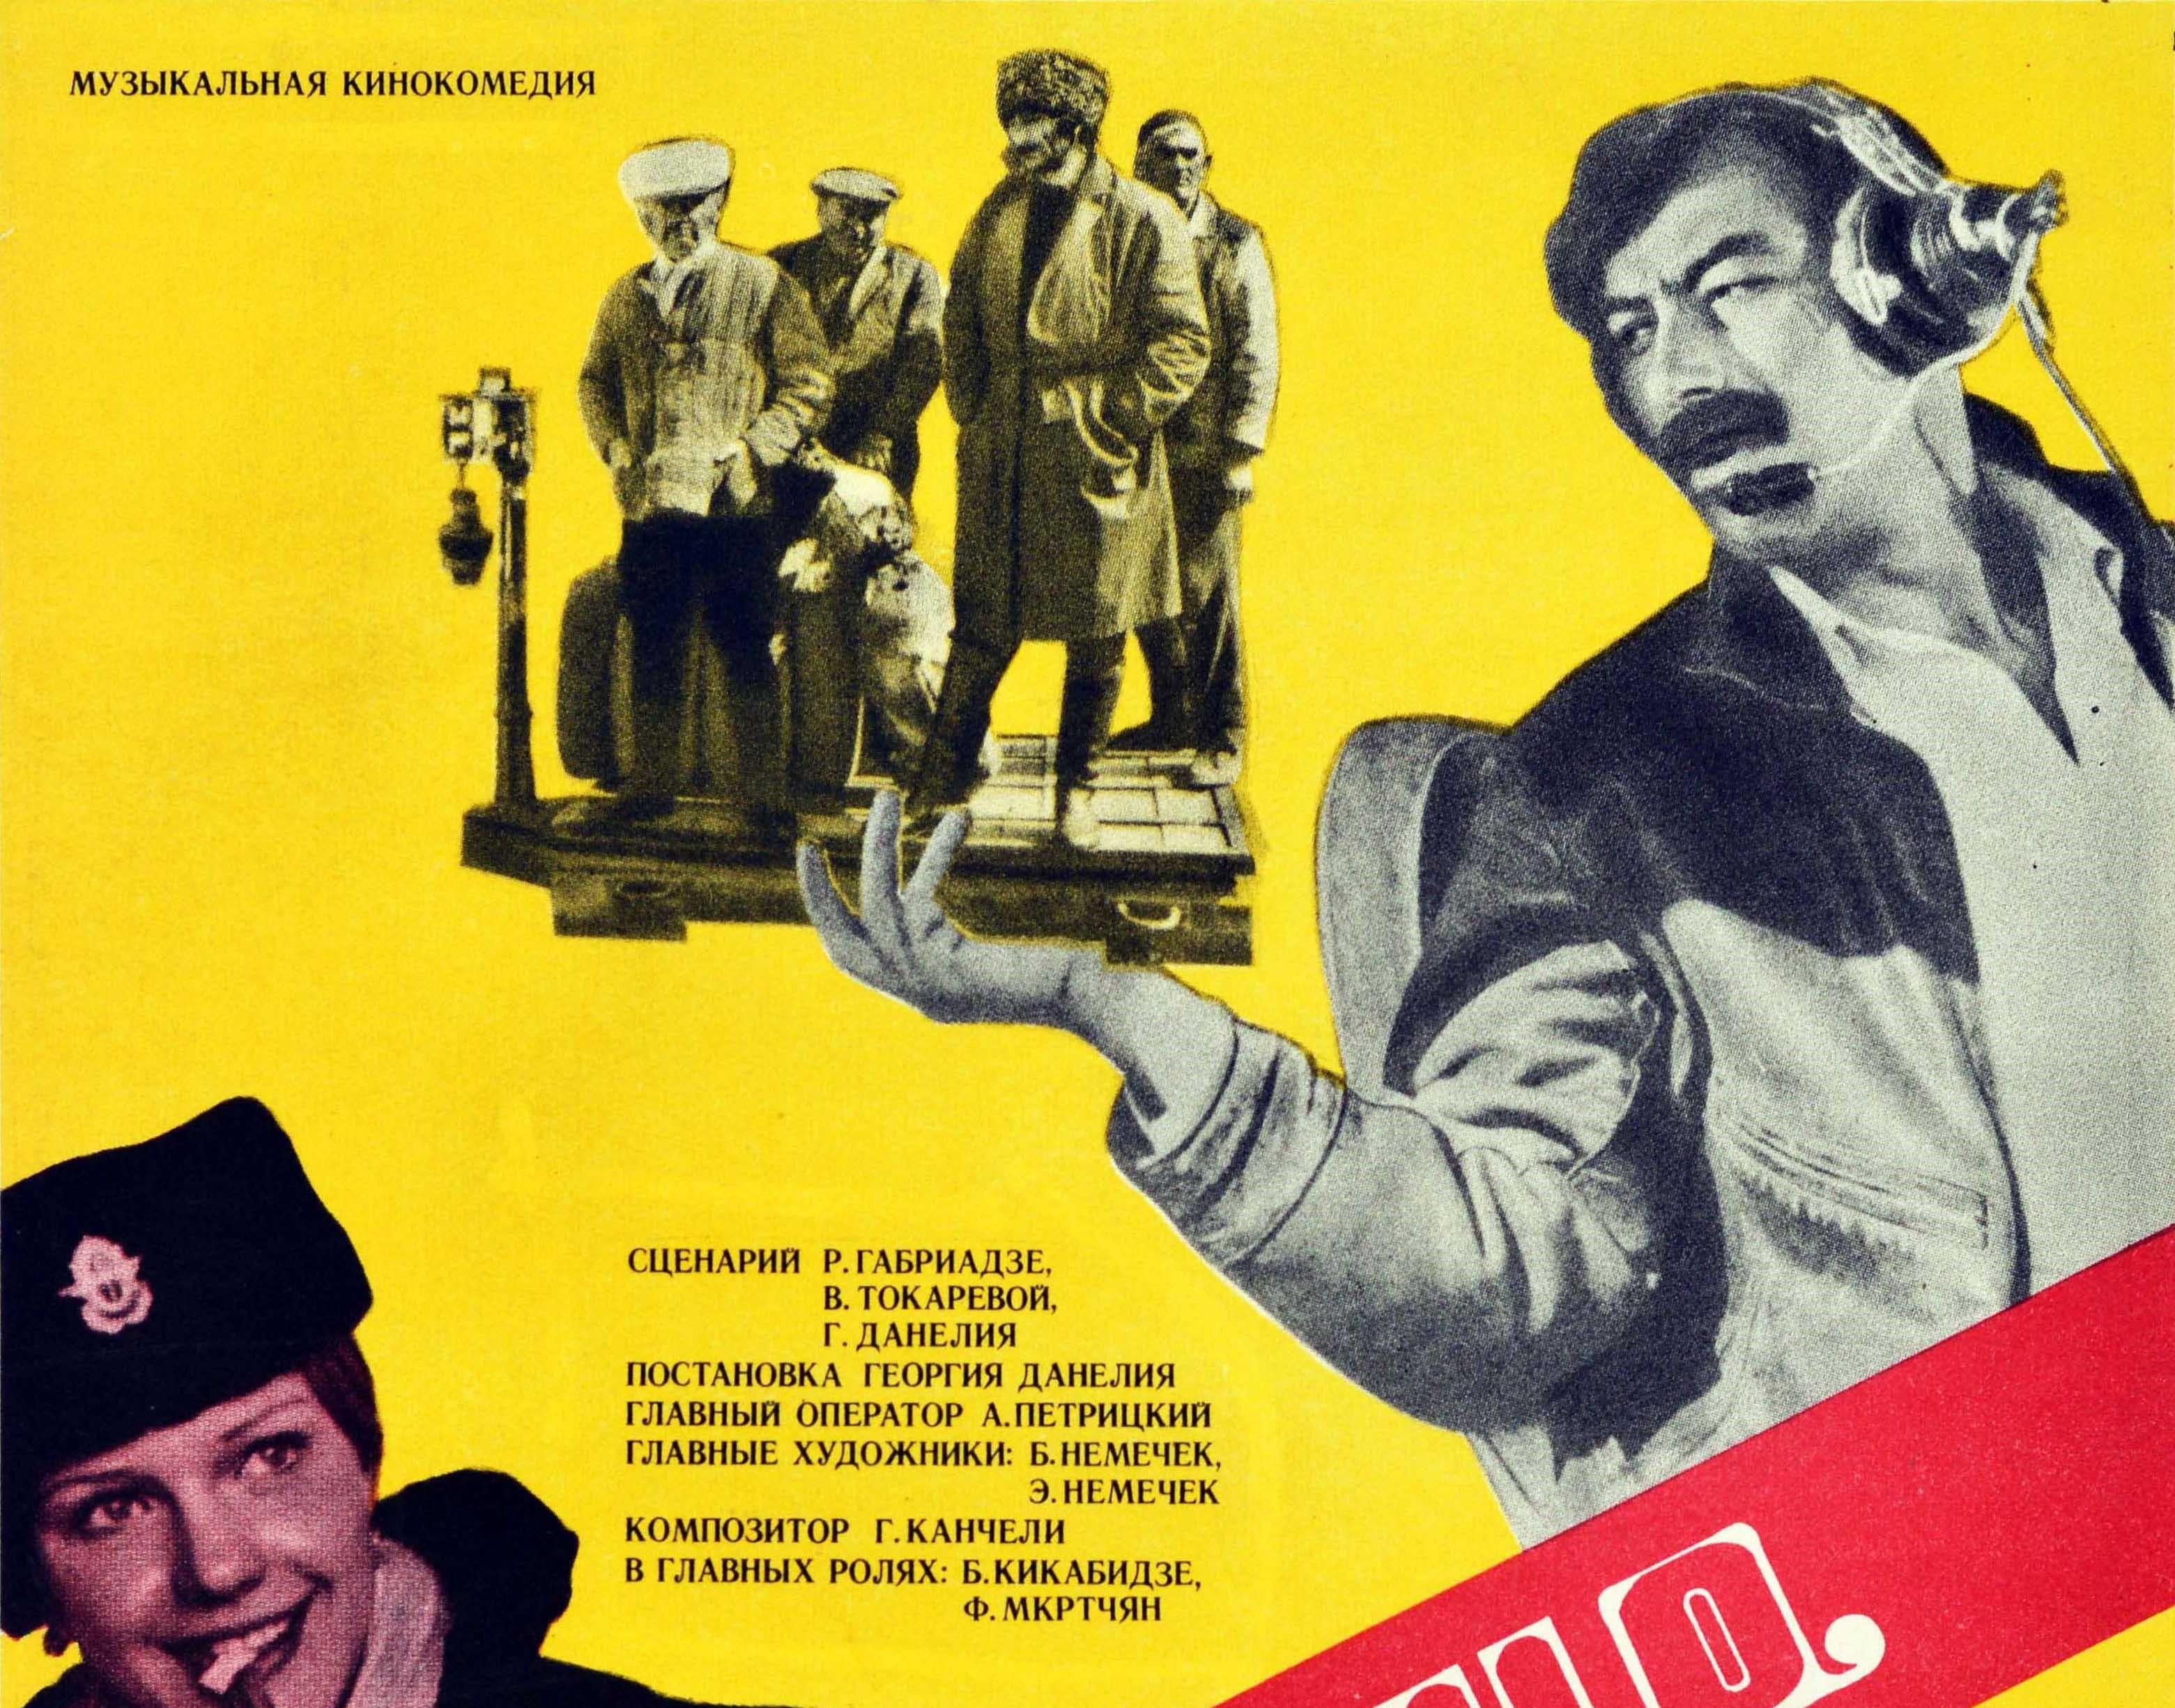 Original Vintage Film Poster For Mimino USSR Comedy Movie Photomontage Design - Print by A. Kolpakov